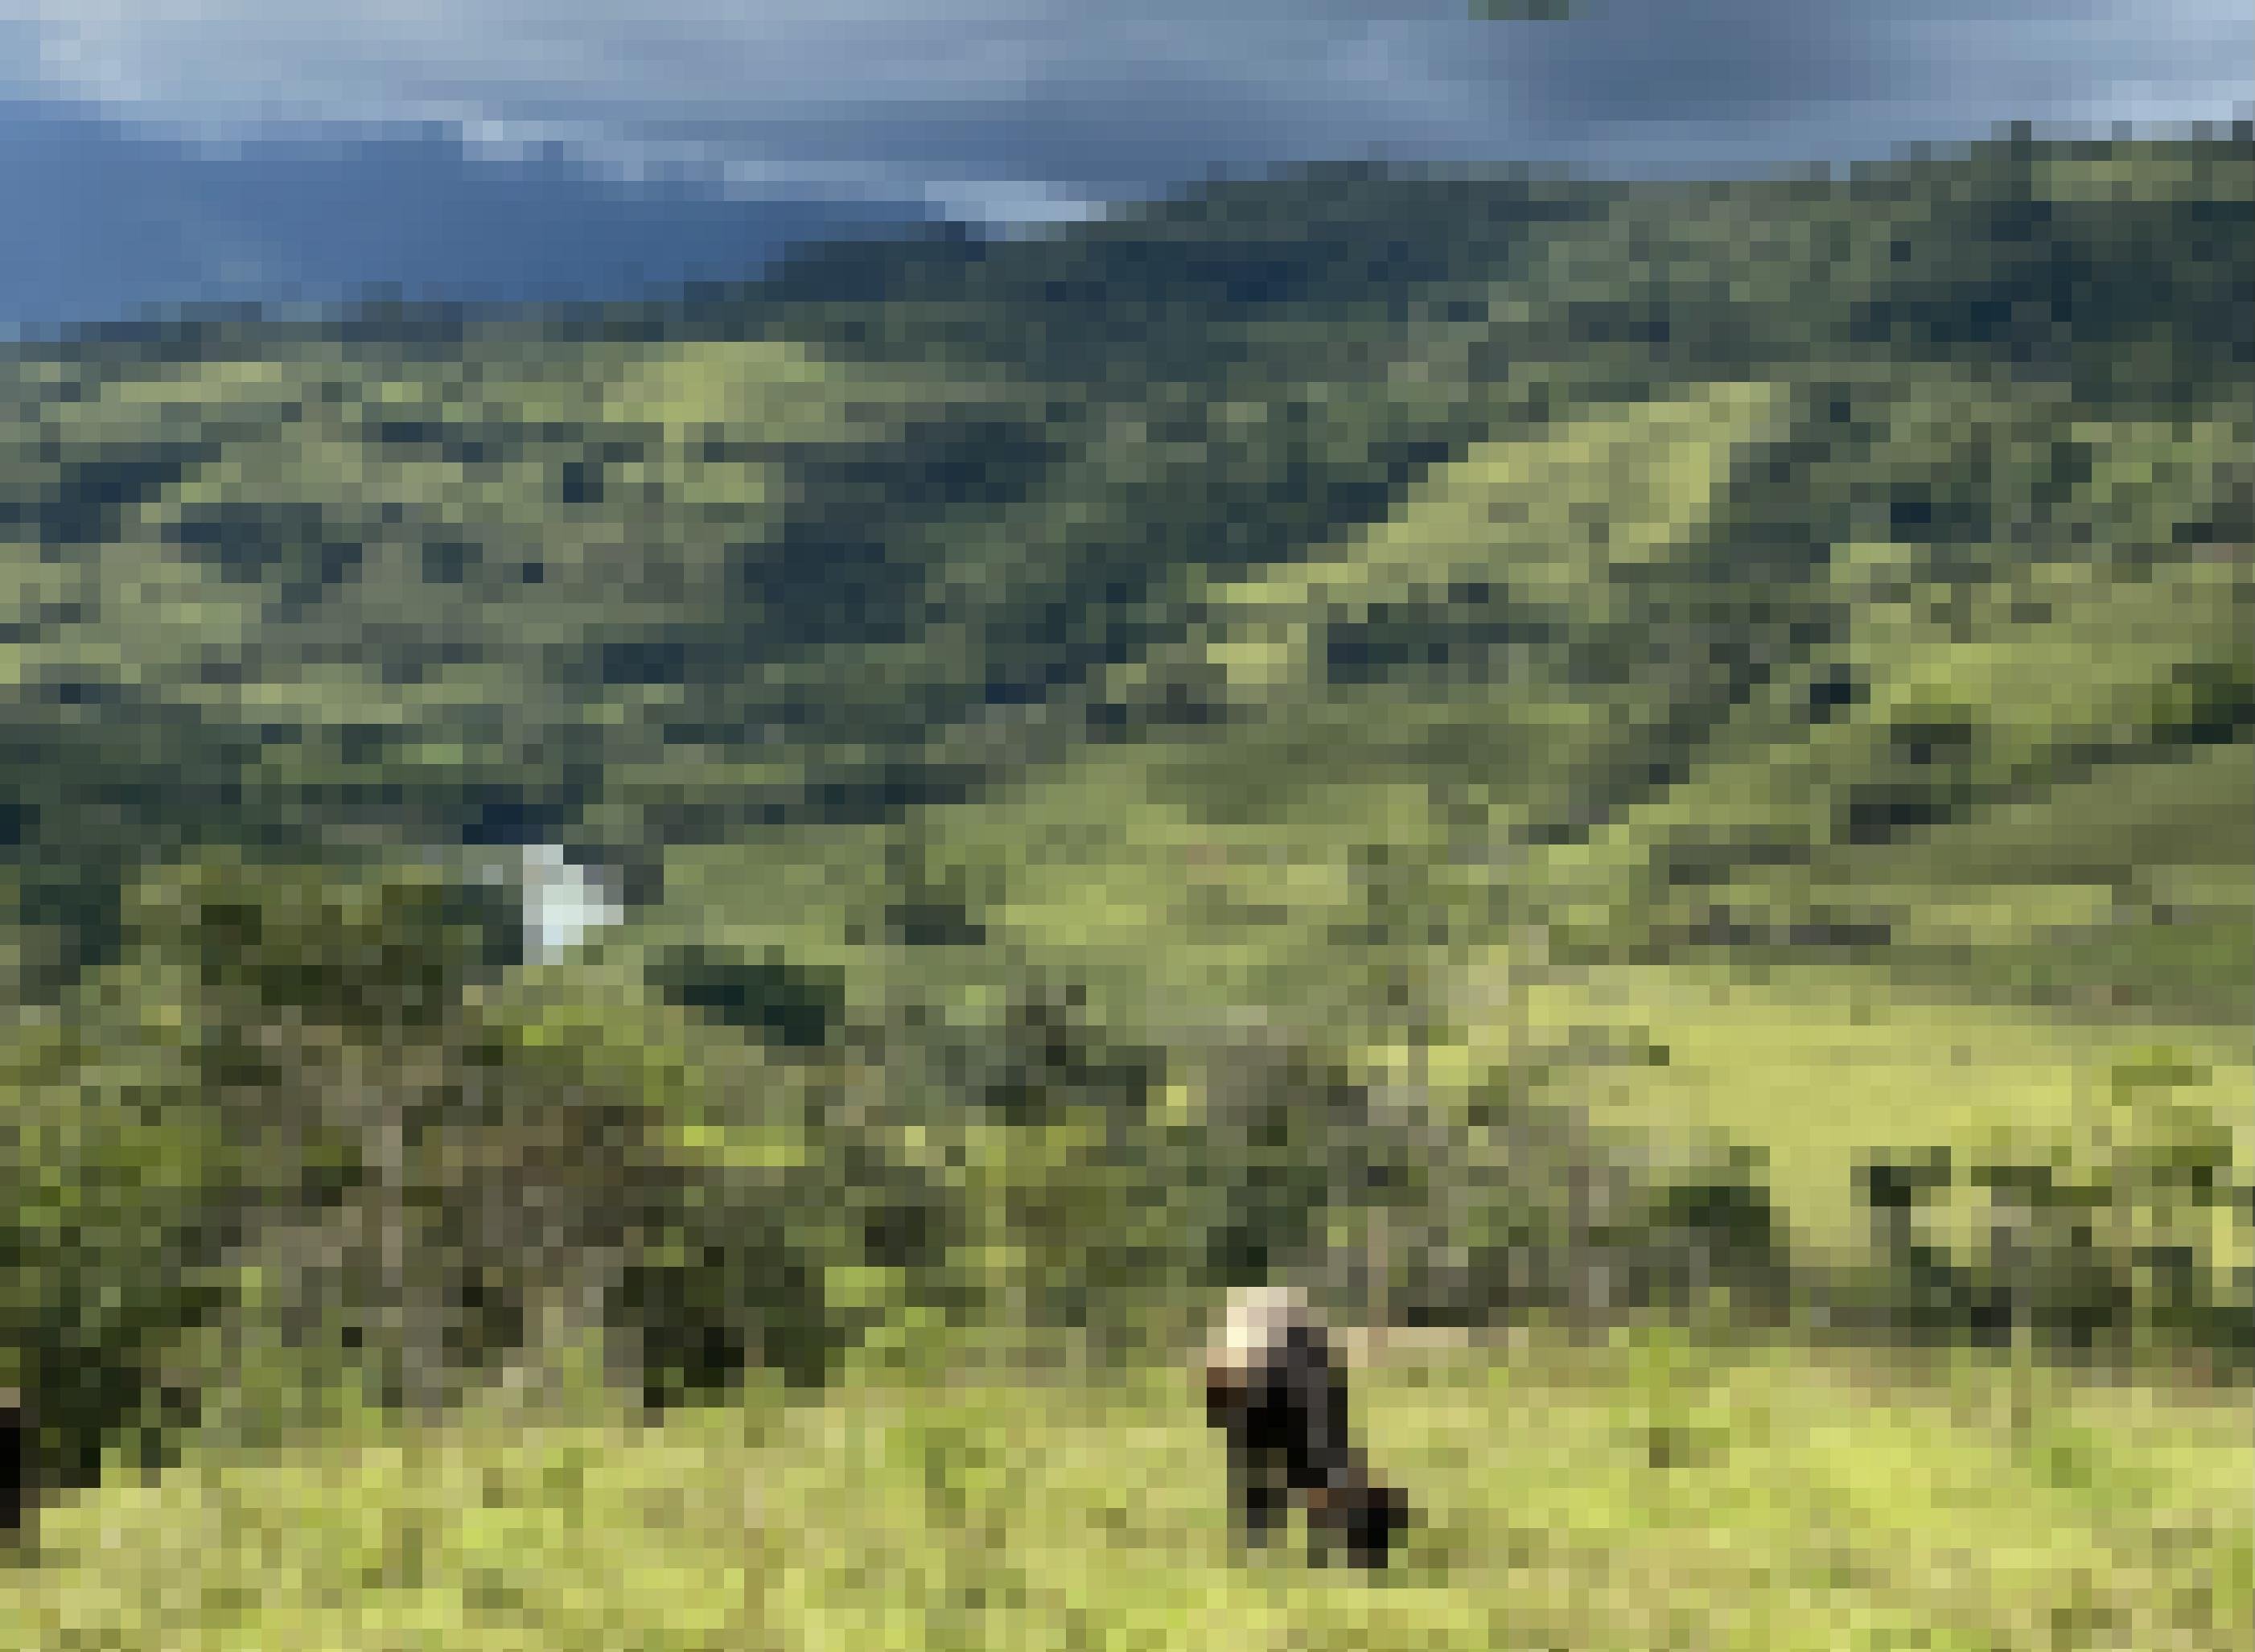 Eine weidende Kuh im Vordergrund, dahinter grüne Hügel und dann blaue Berge am Horizont, in dunkle Wolken gehüllt.